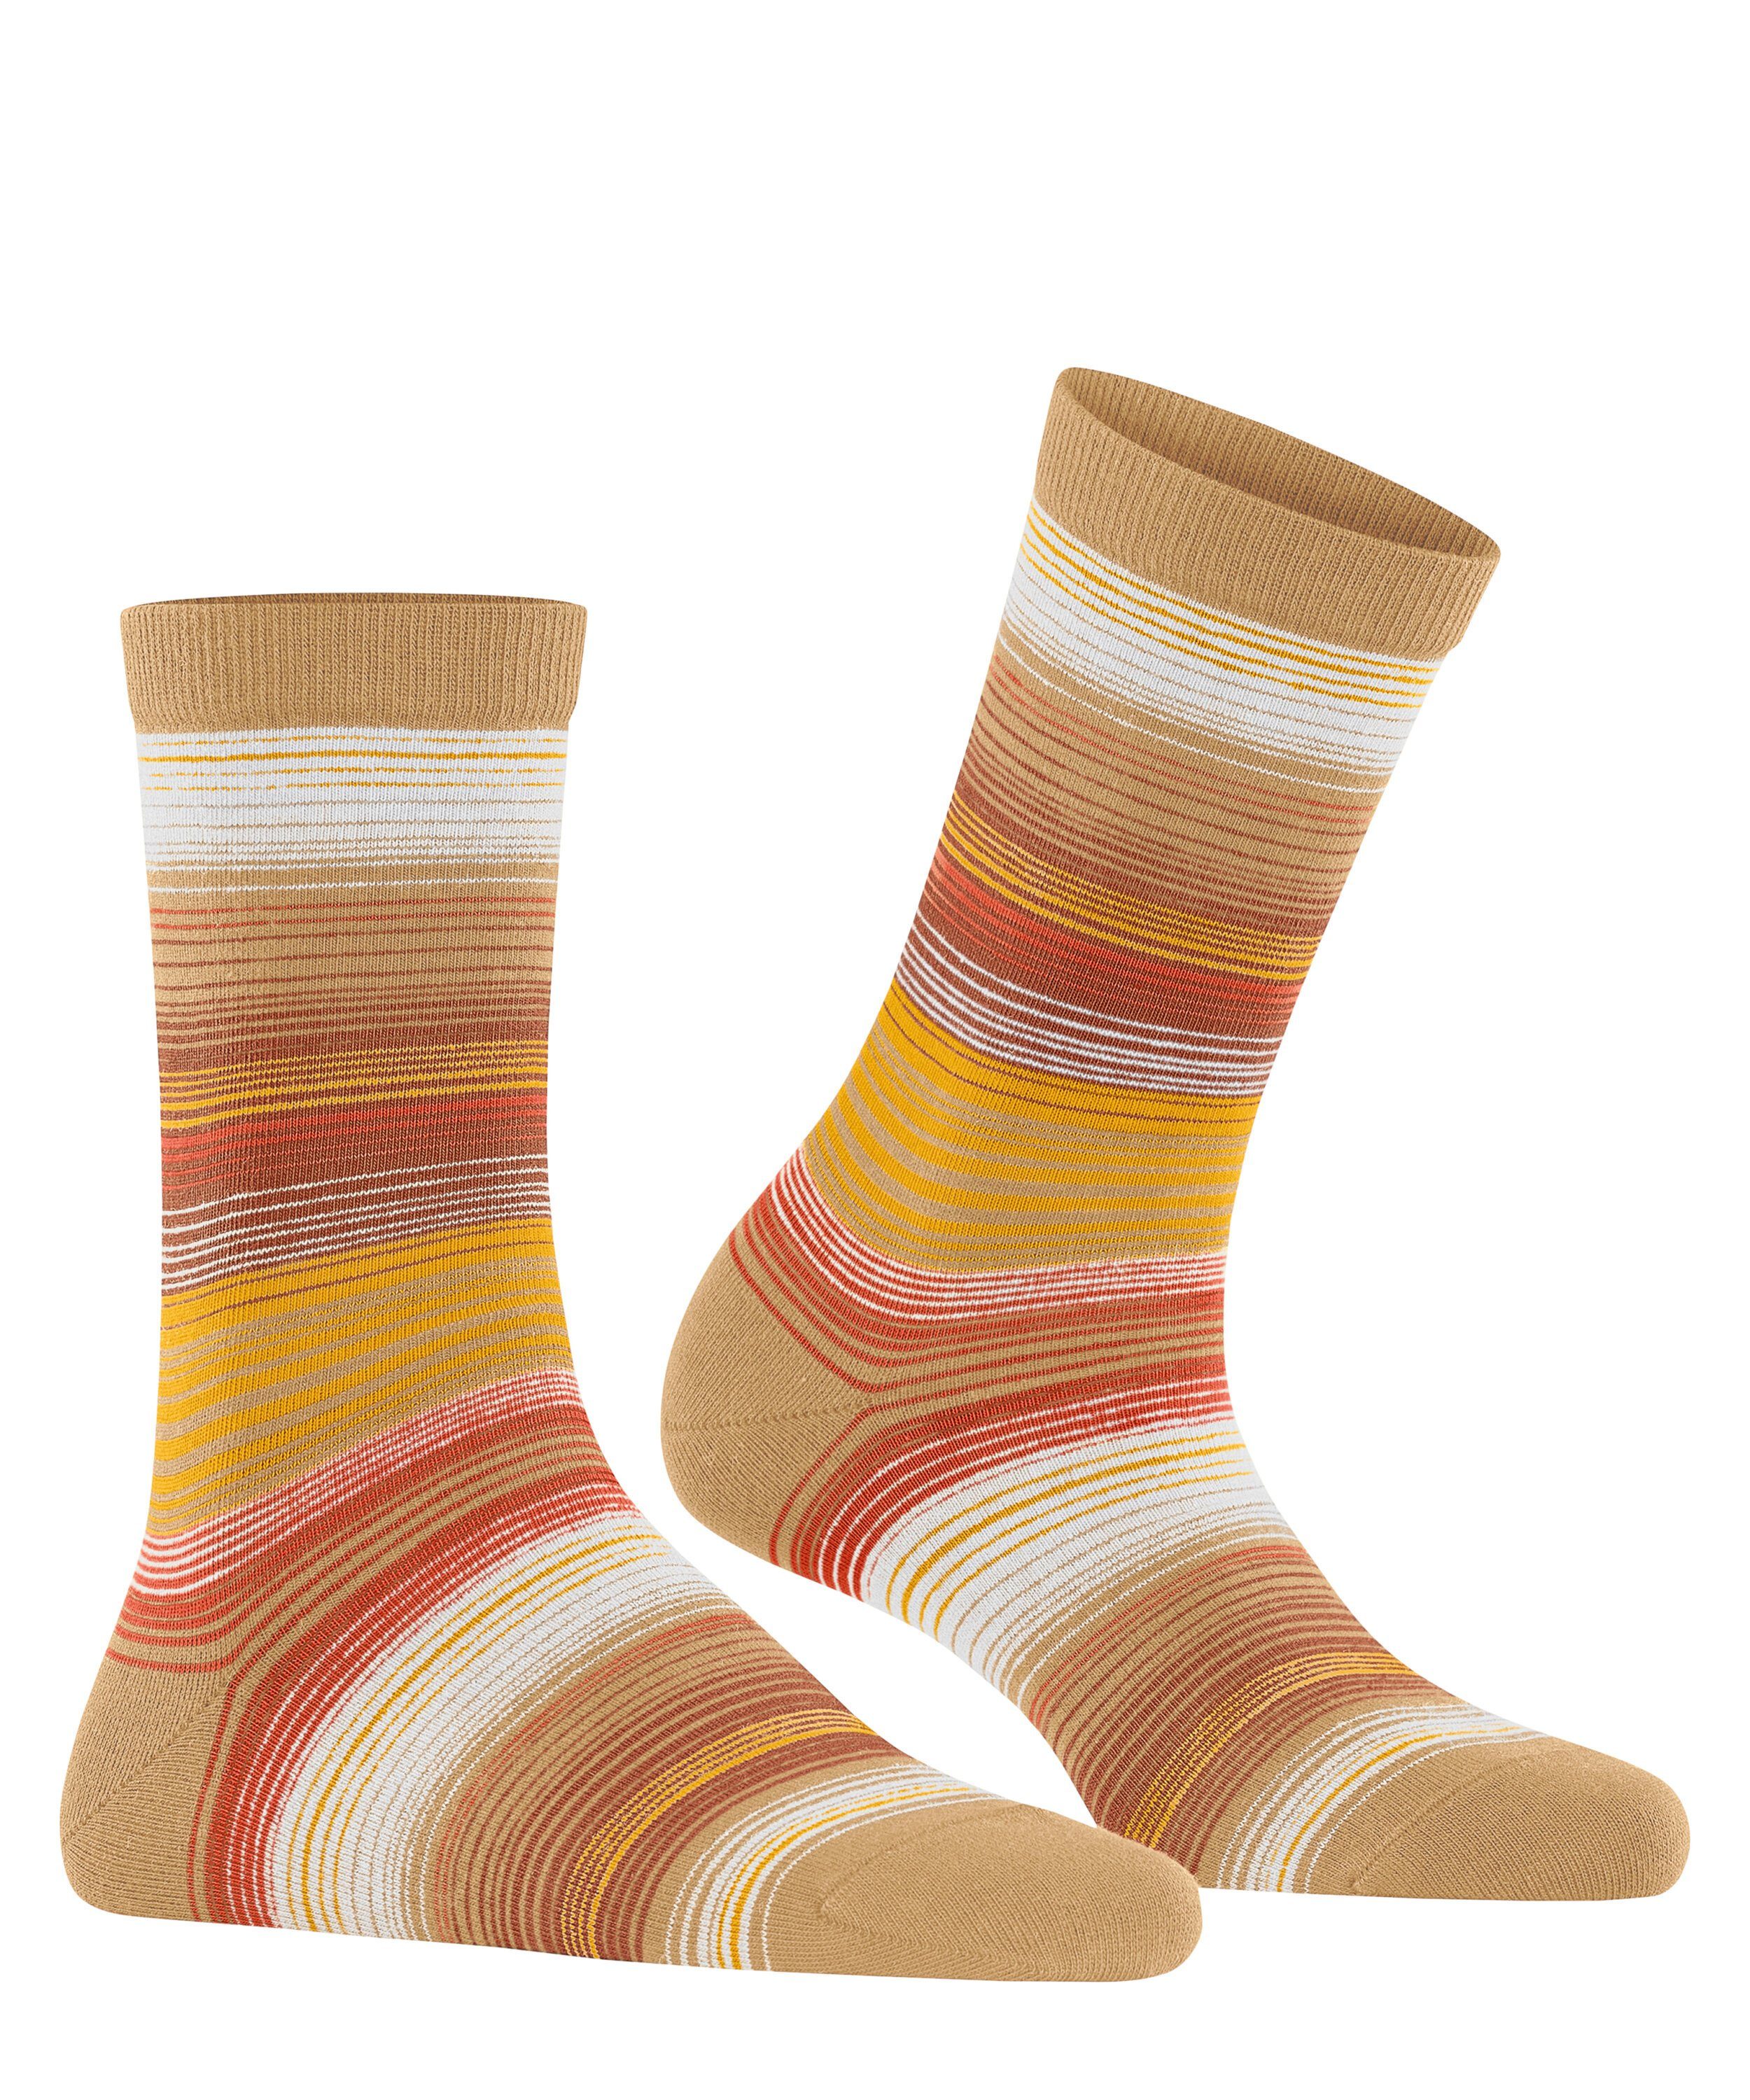 Socken Stripe toffee (4670) Burlington (1-Paar)